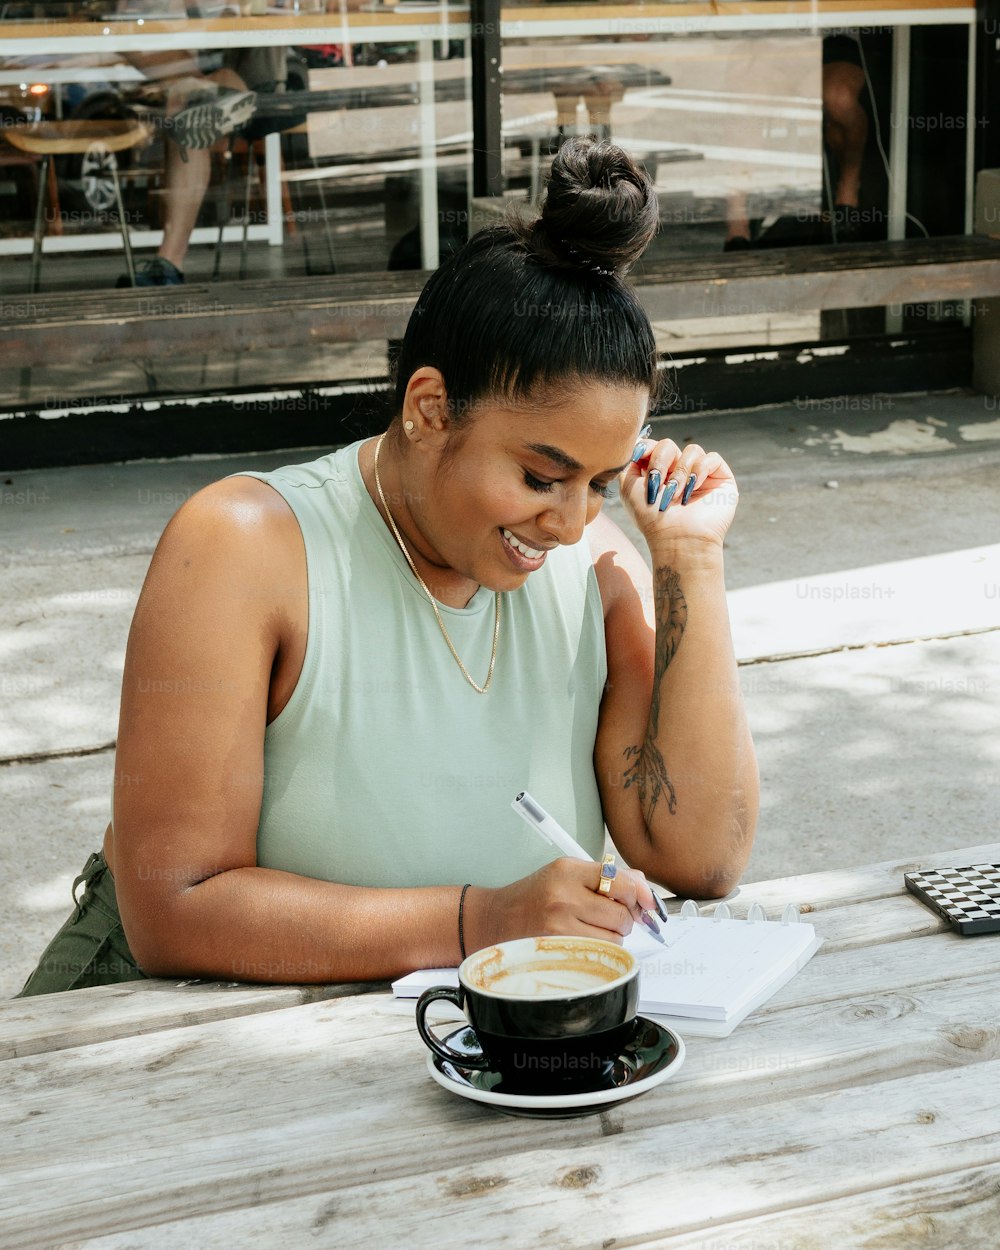 Une femme assise à une table avec une tasse de café